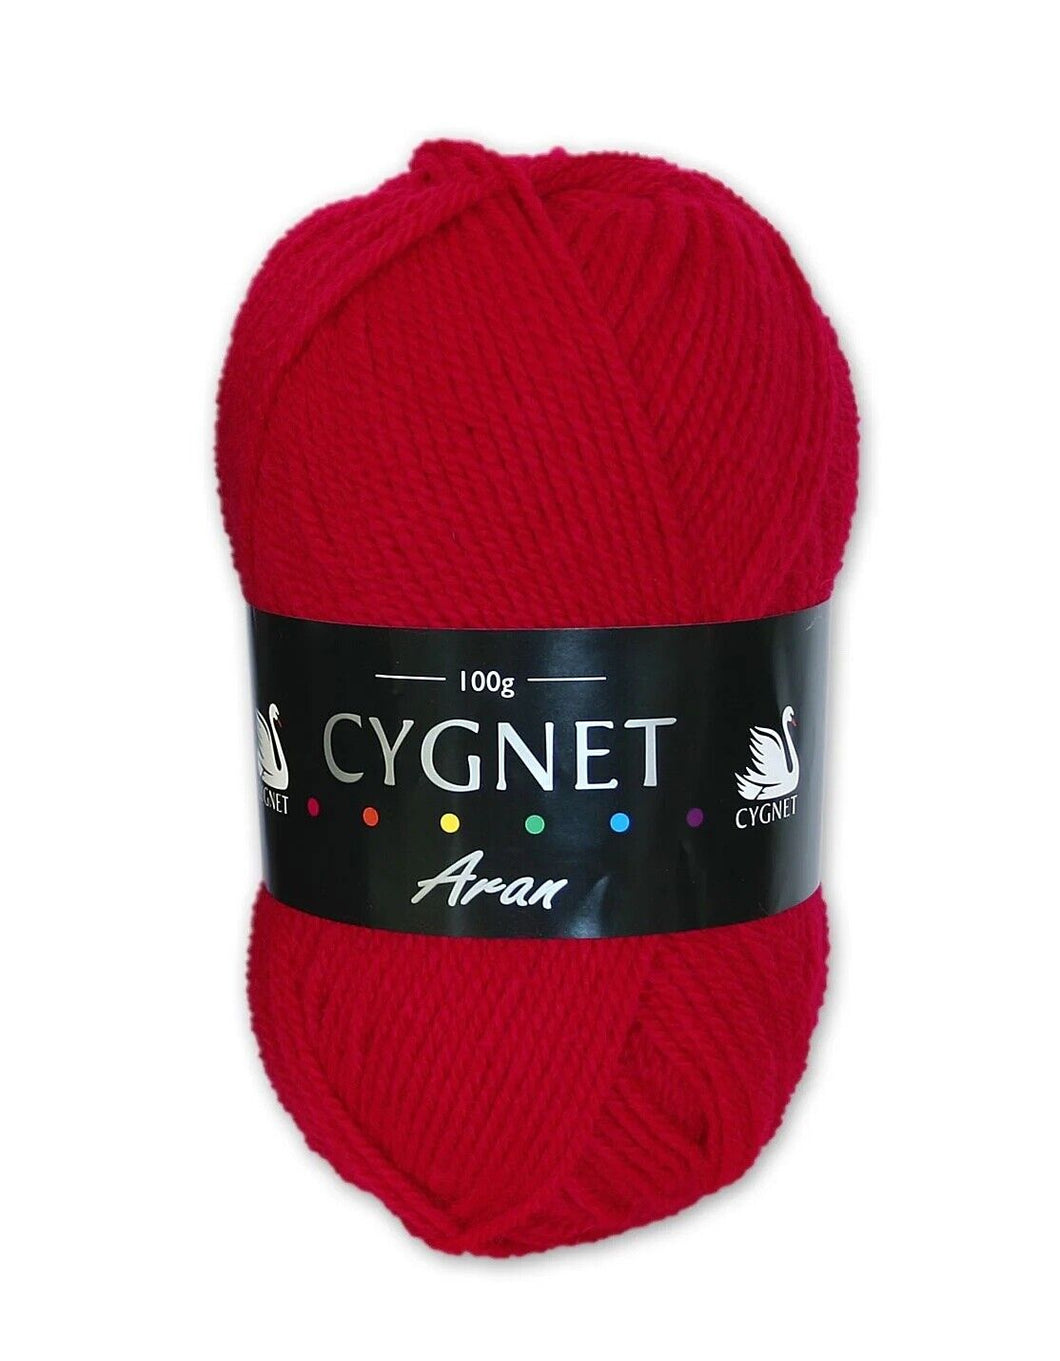 Cygnet ARAN Knitting Yarn / Wool - 100g Acrylic Crochet Knit Ball - Red